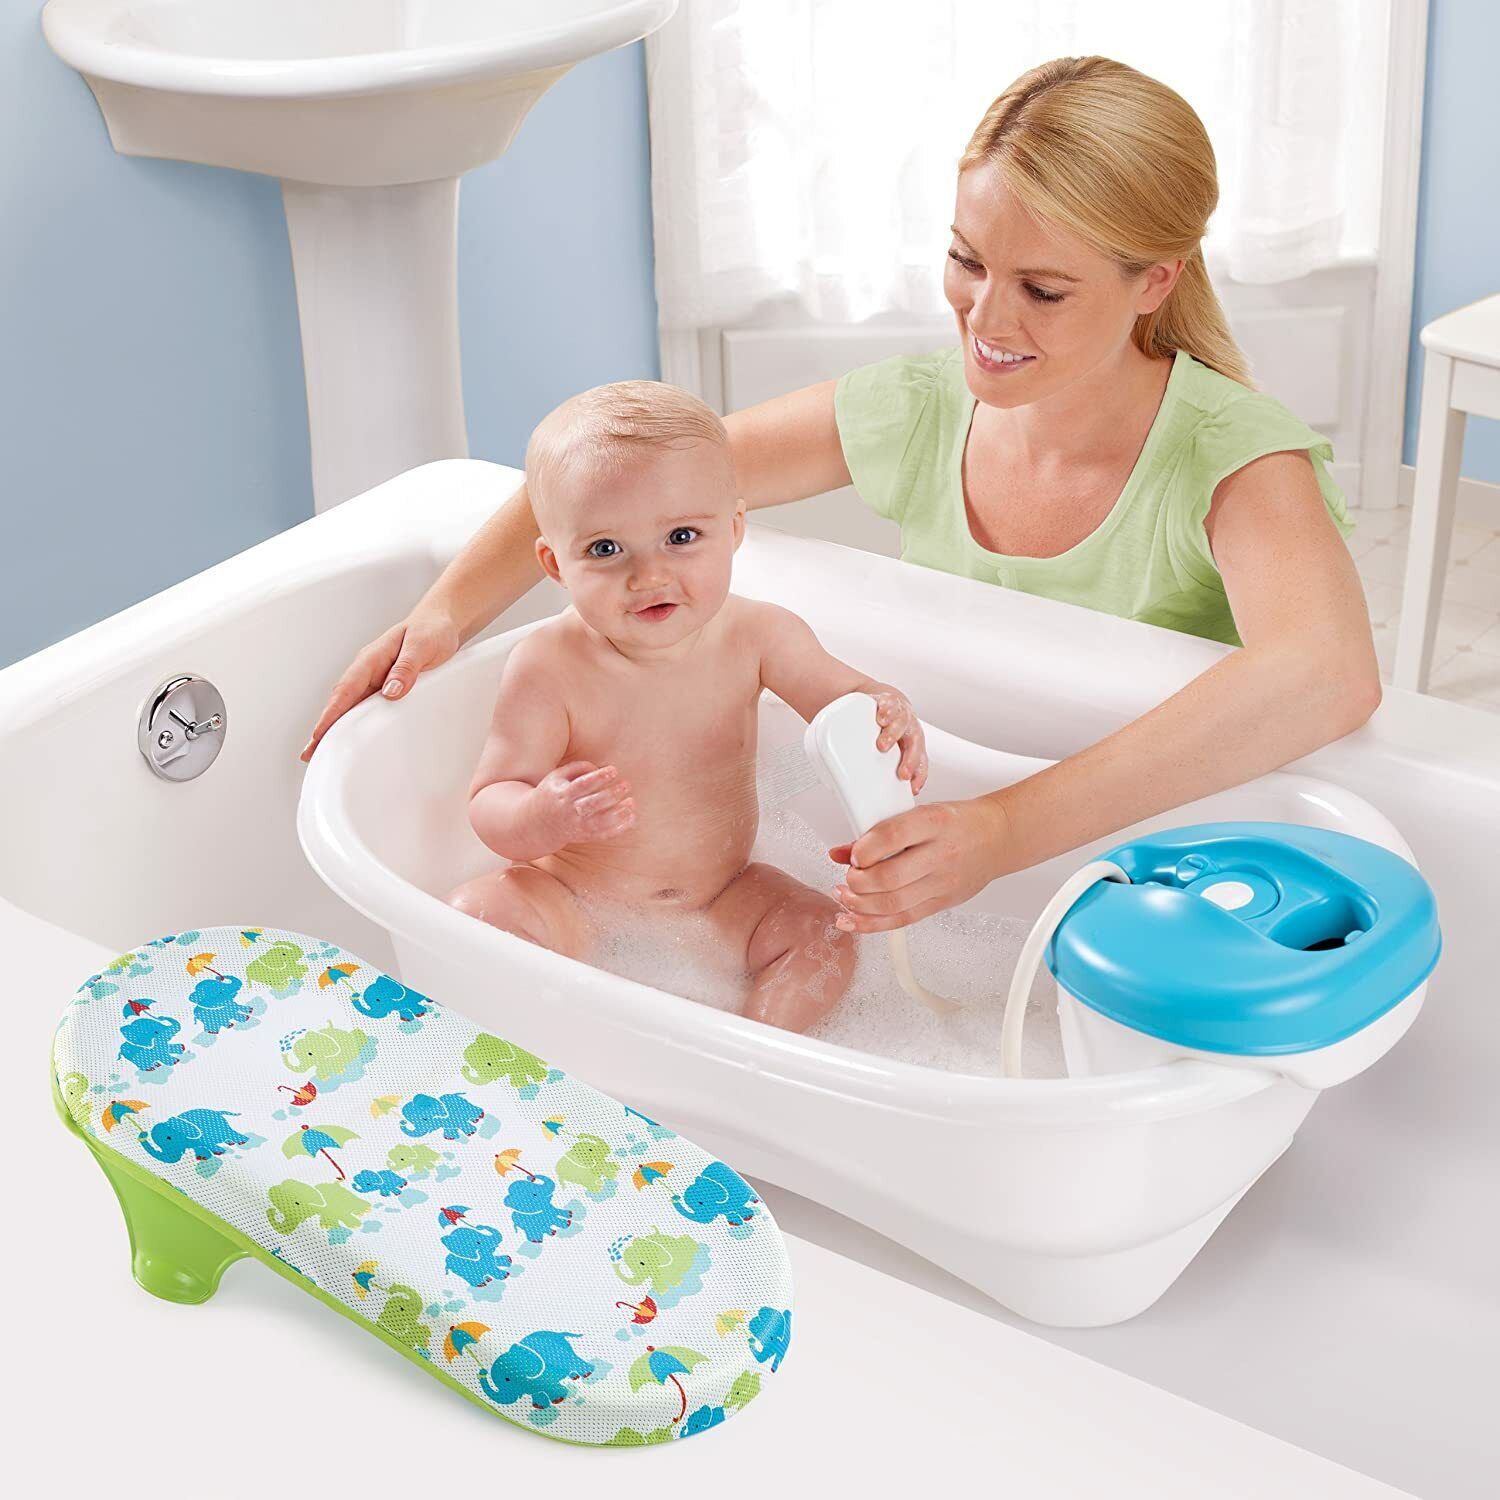 Детские ванночки для купания новорожденных: какую выбрать, какая лучше?